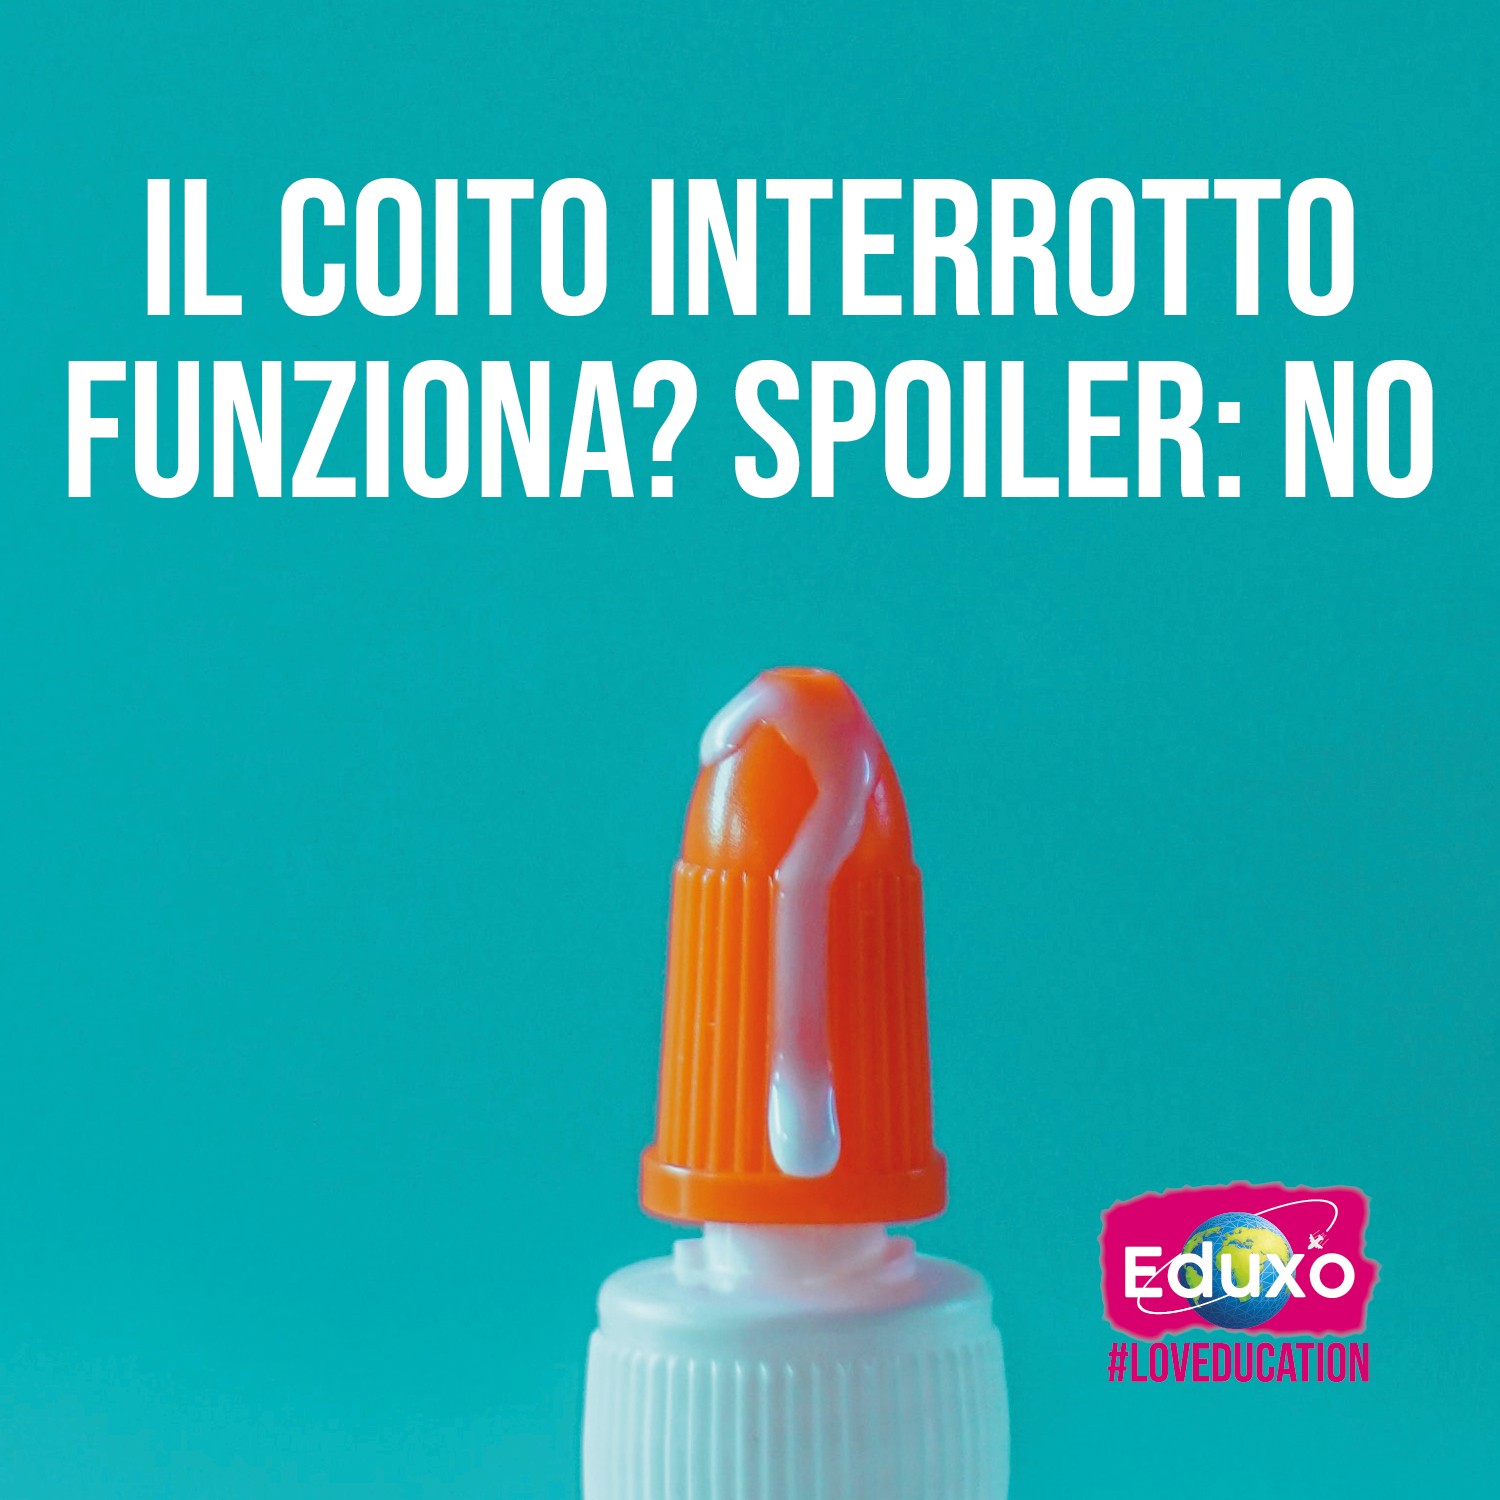 You are currently viewing IL COITO INTERROTTO FUNZIONA? SPOILER: NO